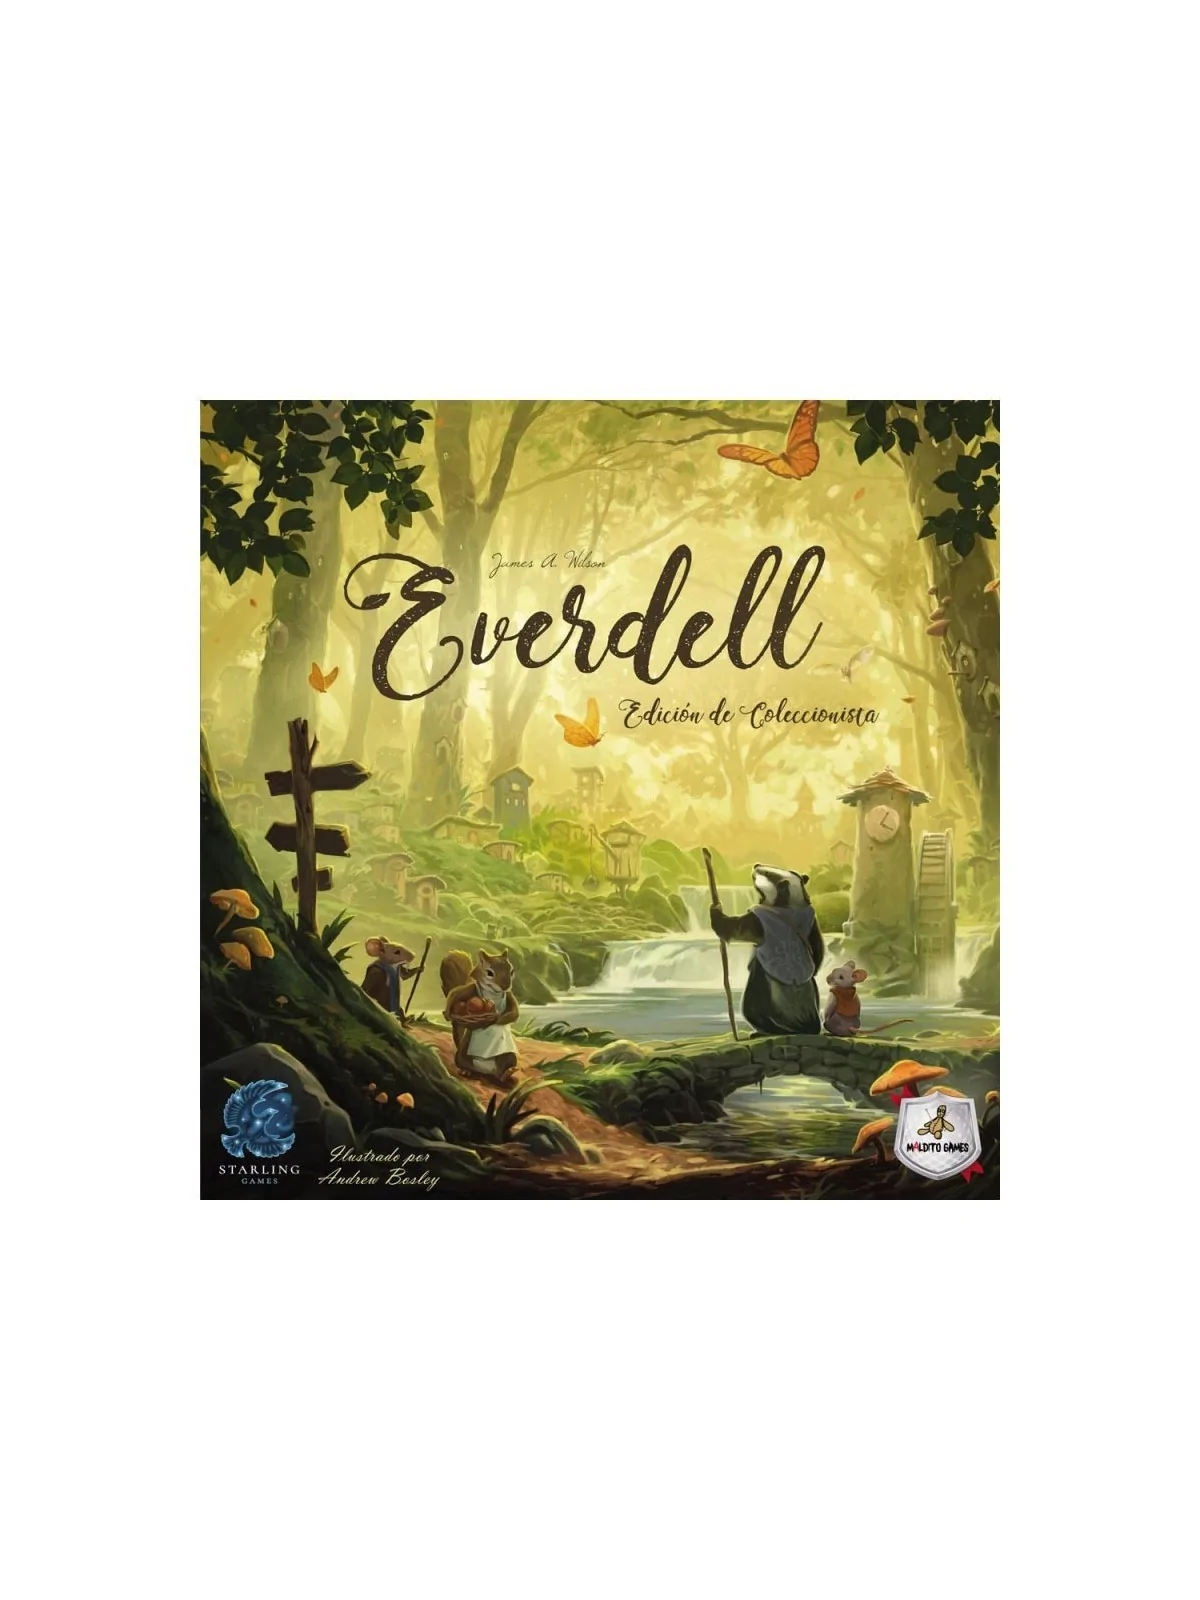 Comprar Everdell Edición Coleccionista barato al mejor precio 76,50 € 